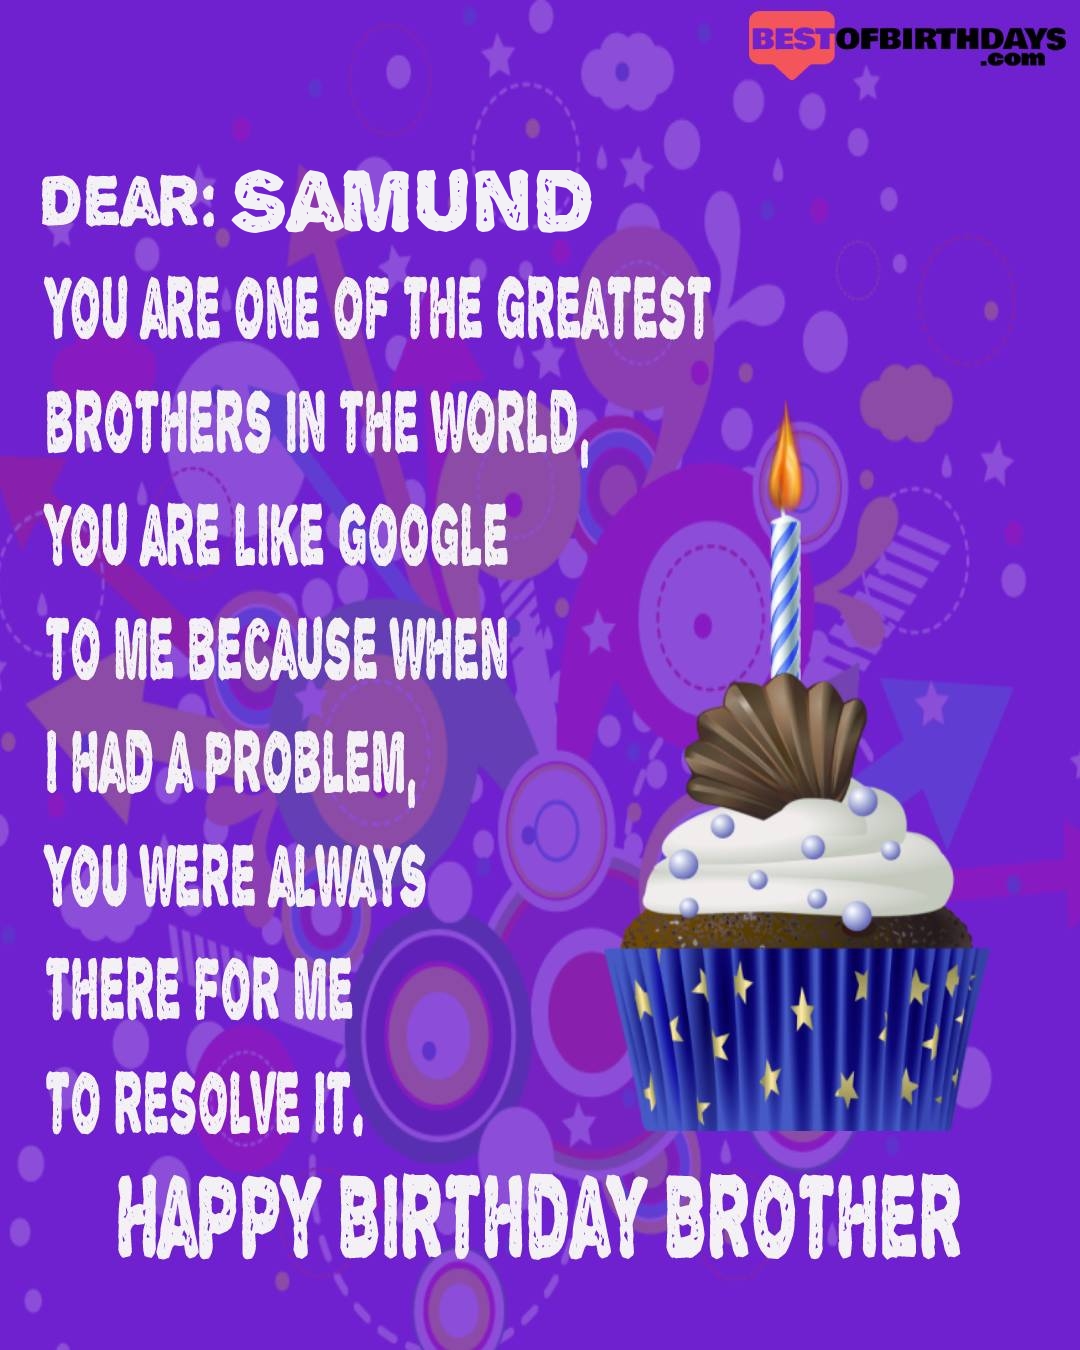 Happy birthday samund bhai brother bro